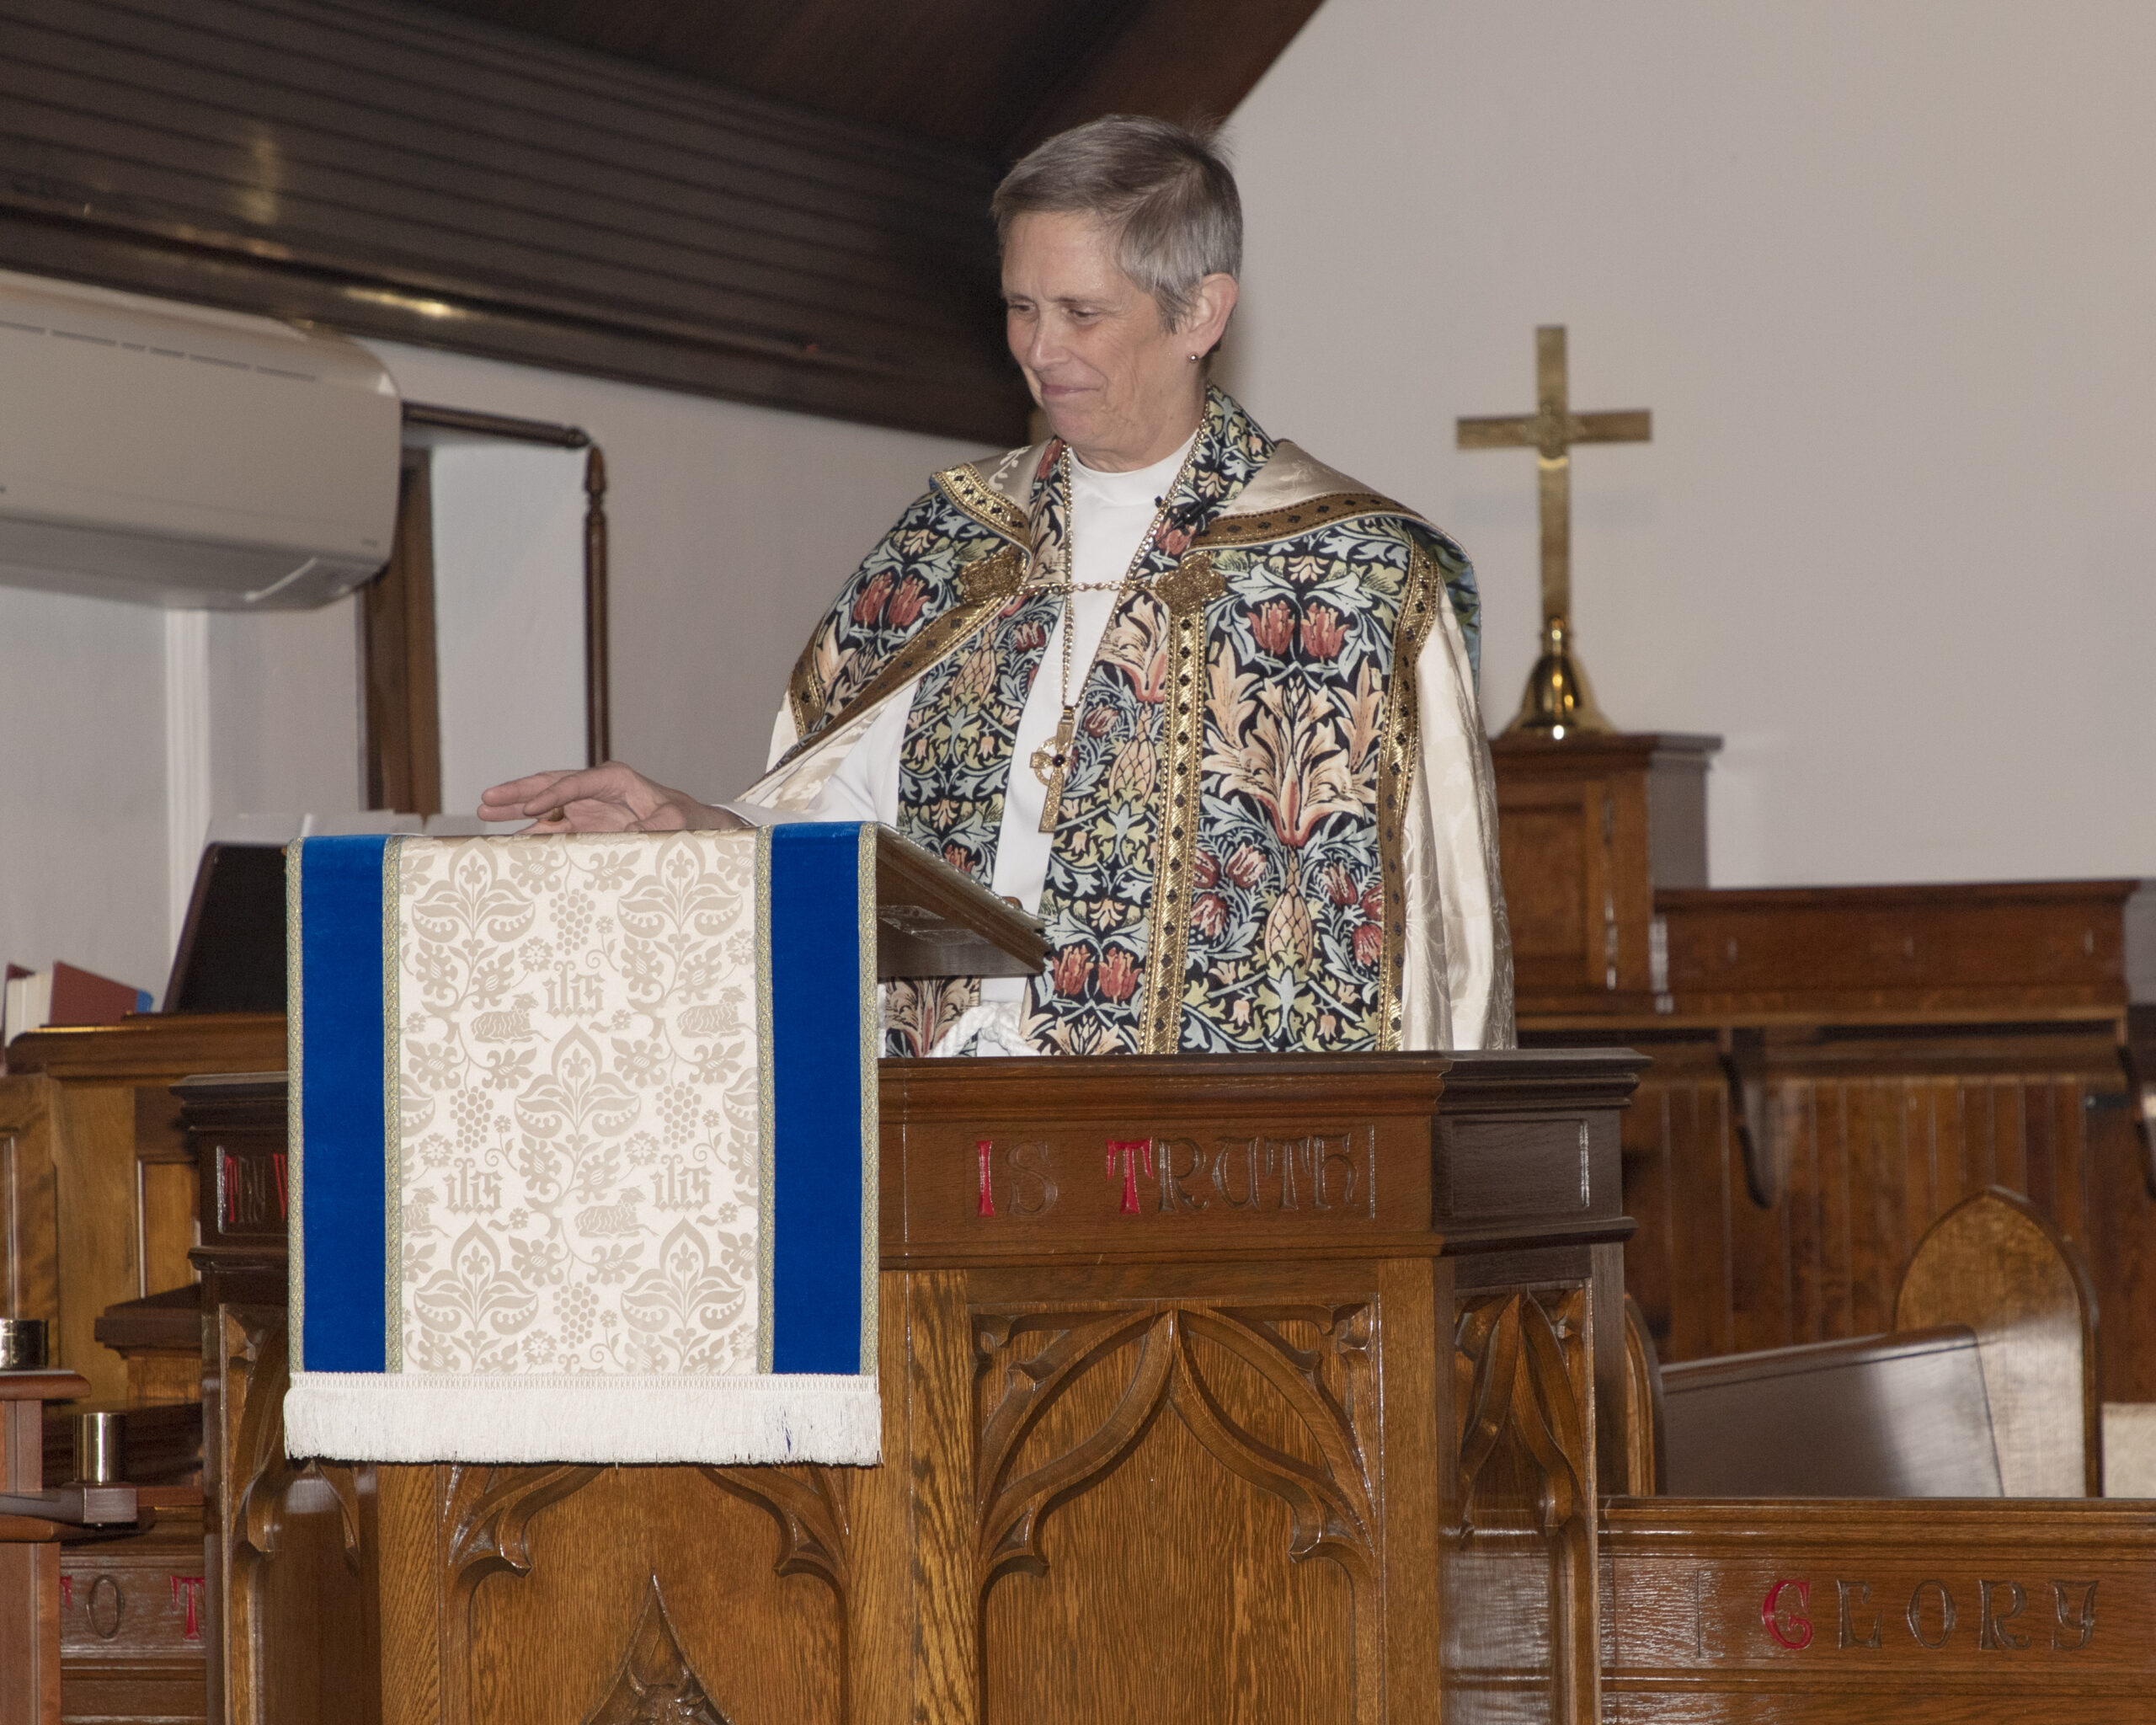 Bishop Scanlan preaches at Saint Luke